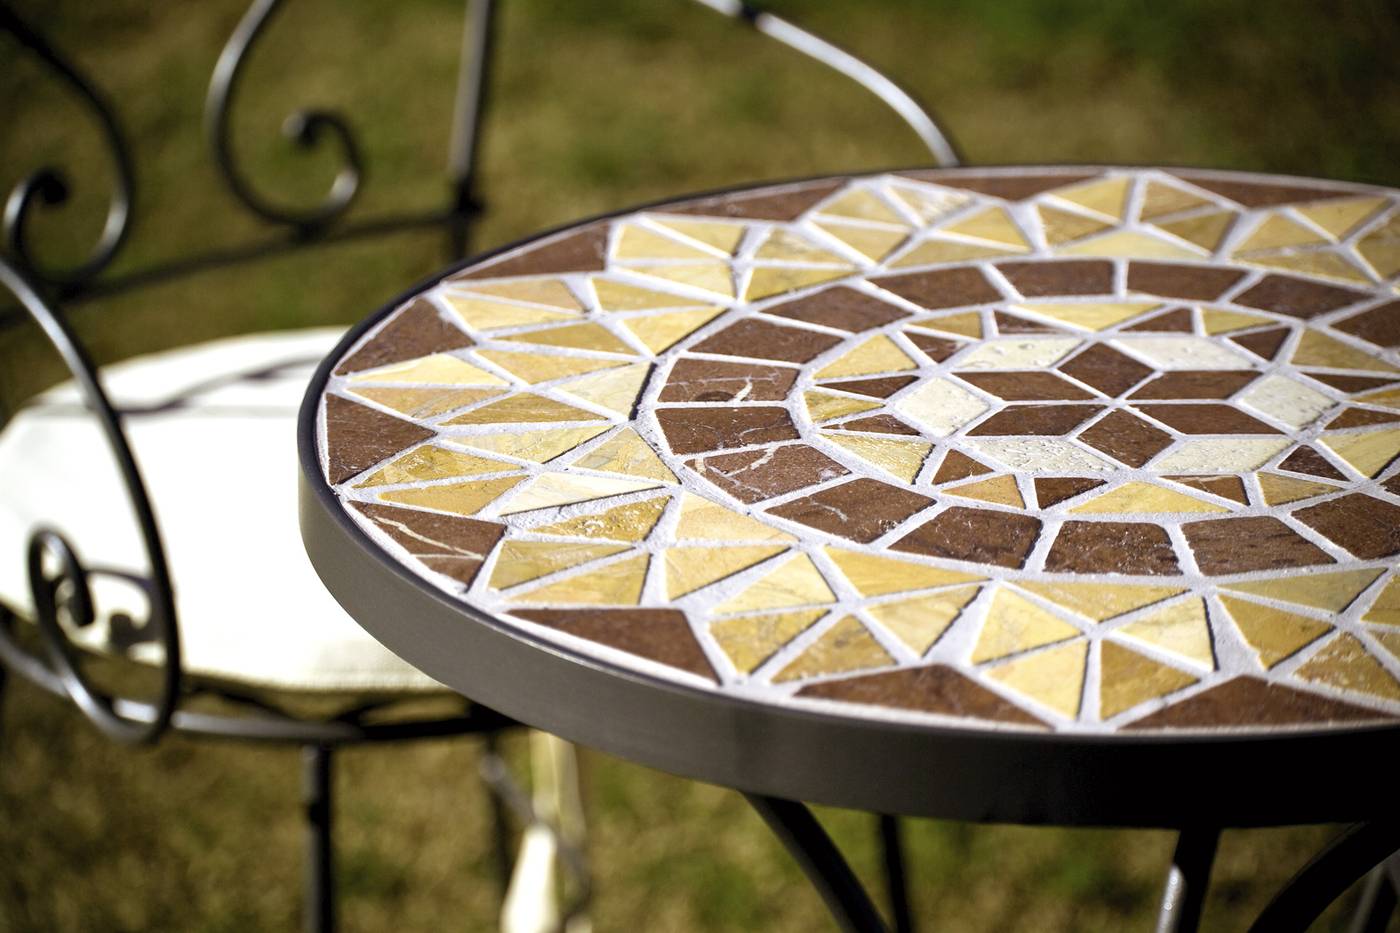 Conjunto forja Córdoba - Conjunto de forja con mesa redonda de mosaico de piedra natural o cristal y 2 sillones